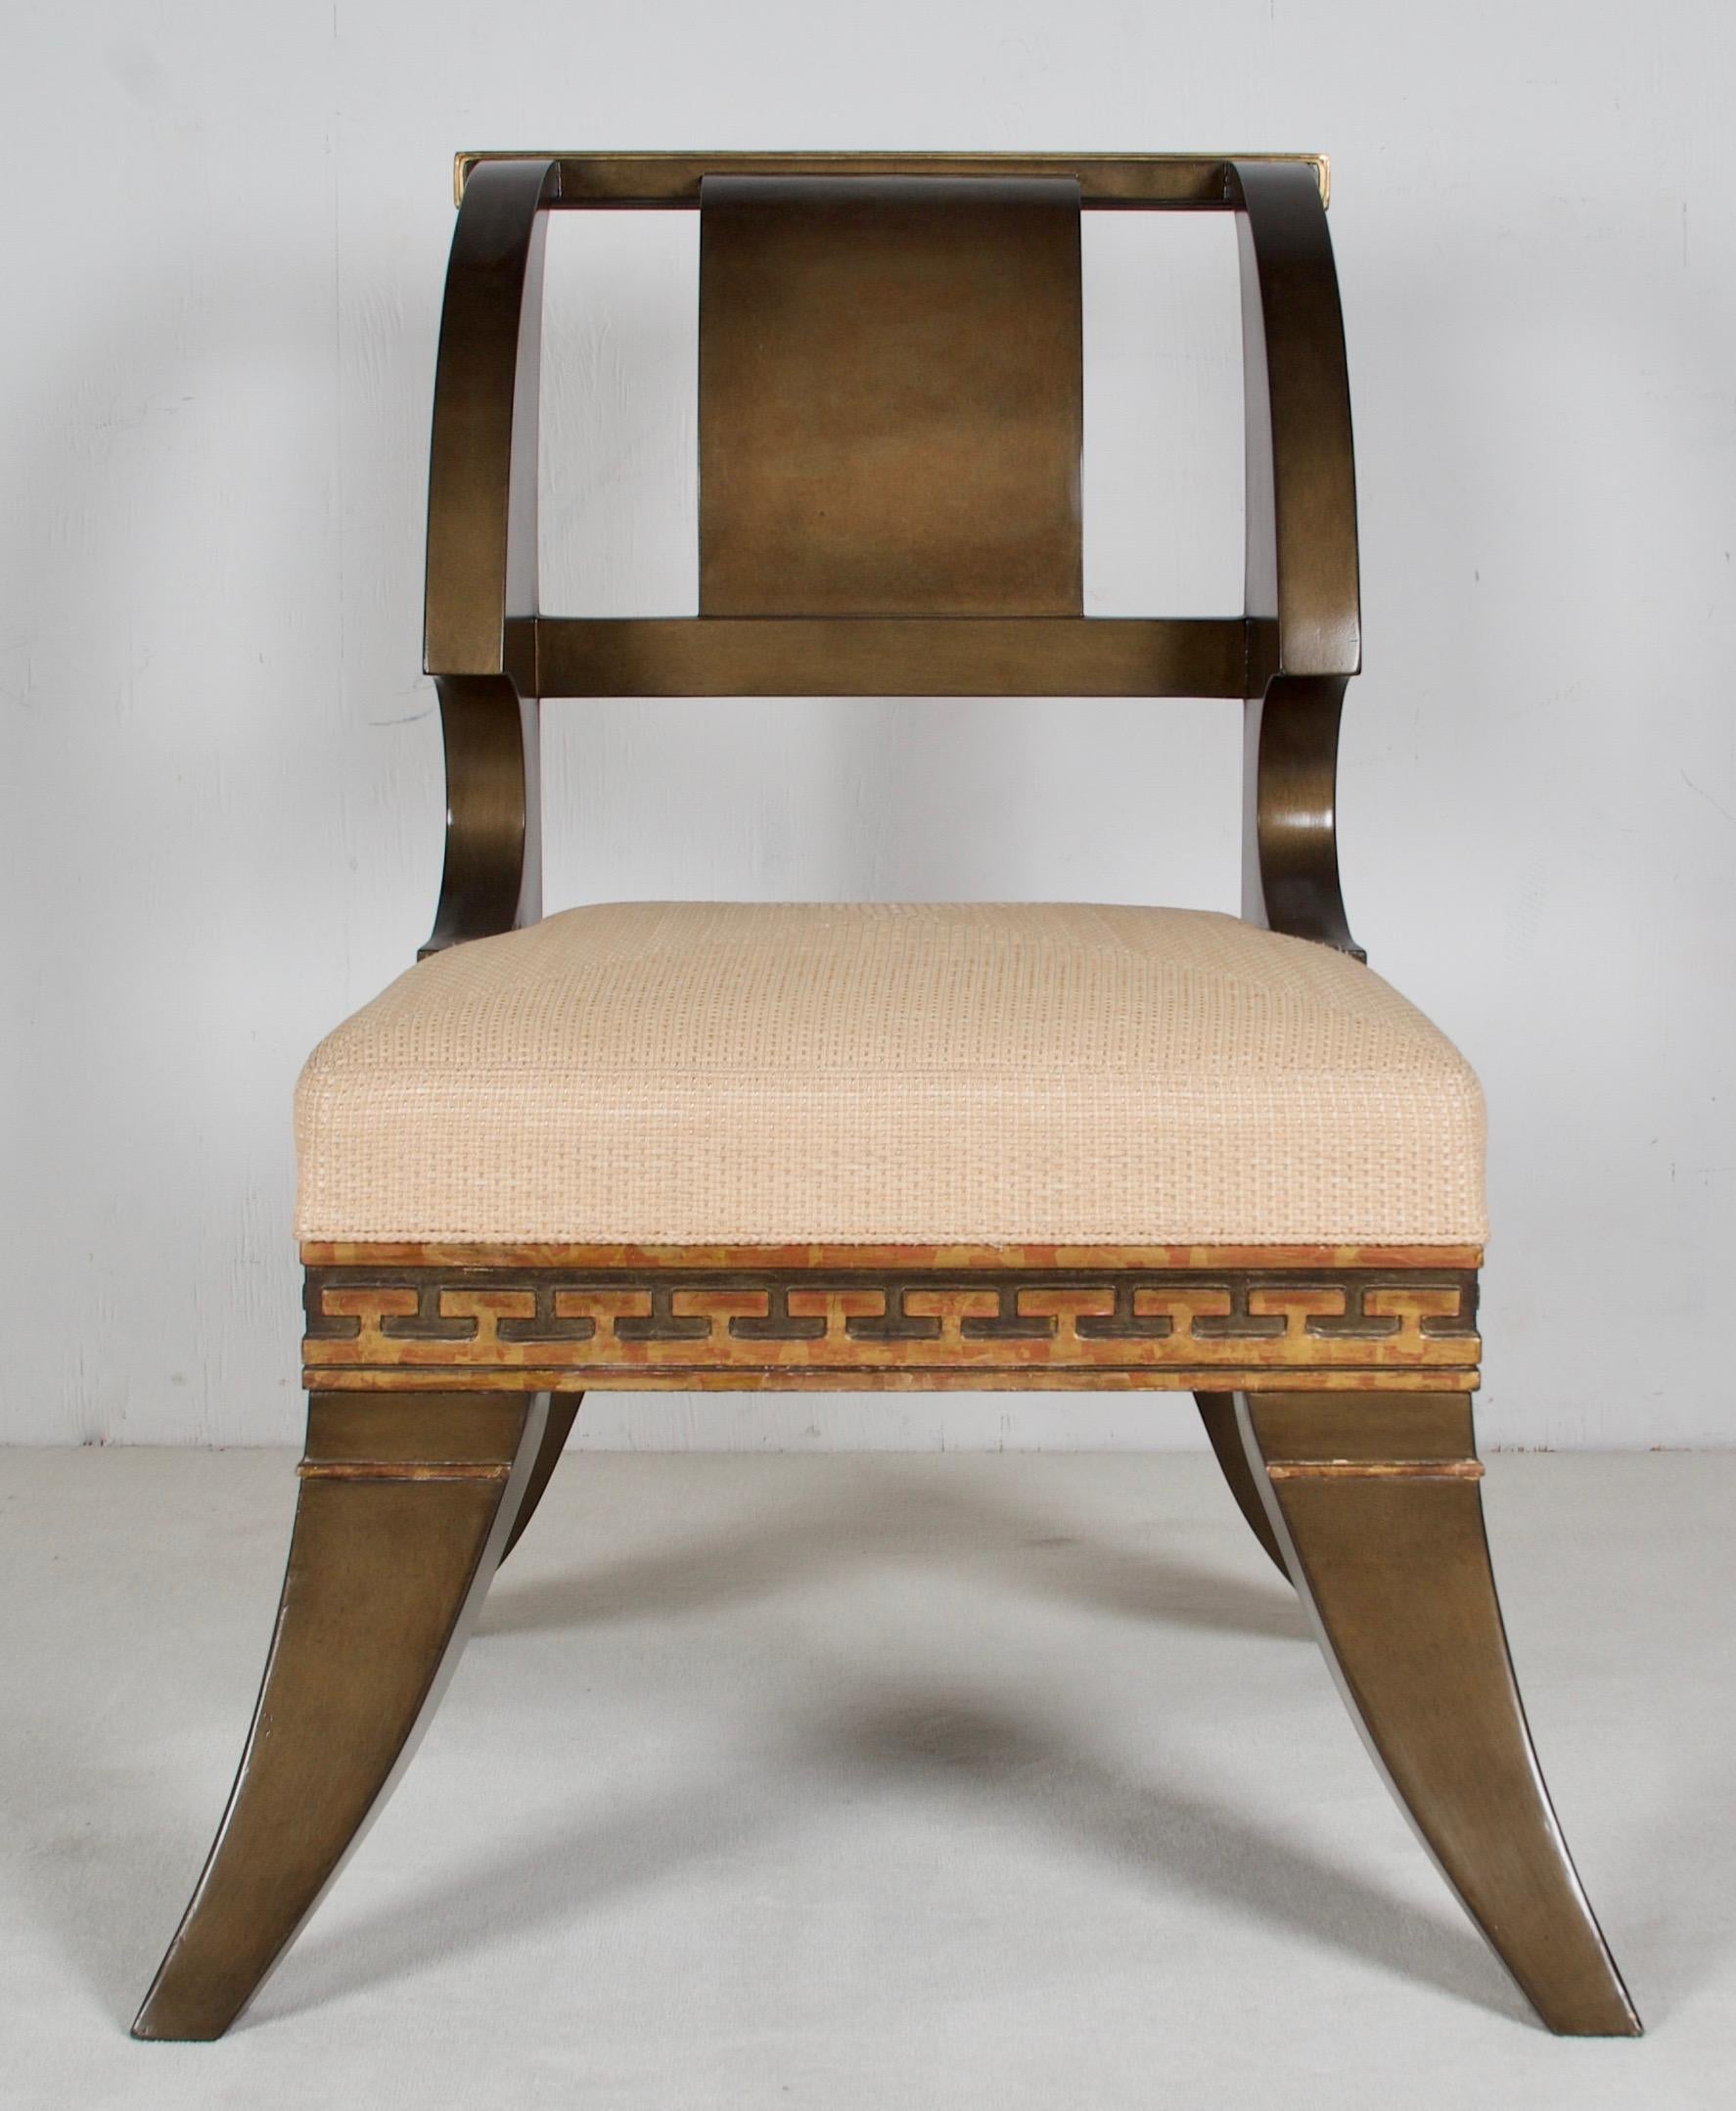 Diese Stühle sind nach einem Modell und Zeichnungen von Thomas Hope, dem berühmten neoklassischen Designer des späten 18. und frühen 19. Jahrhunderts in England, gefertigt. Einen seiner Stühle können Sie finden
auf der V&A-Website, ein weiteres